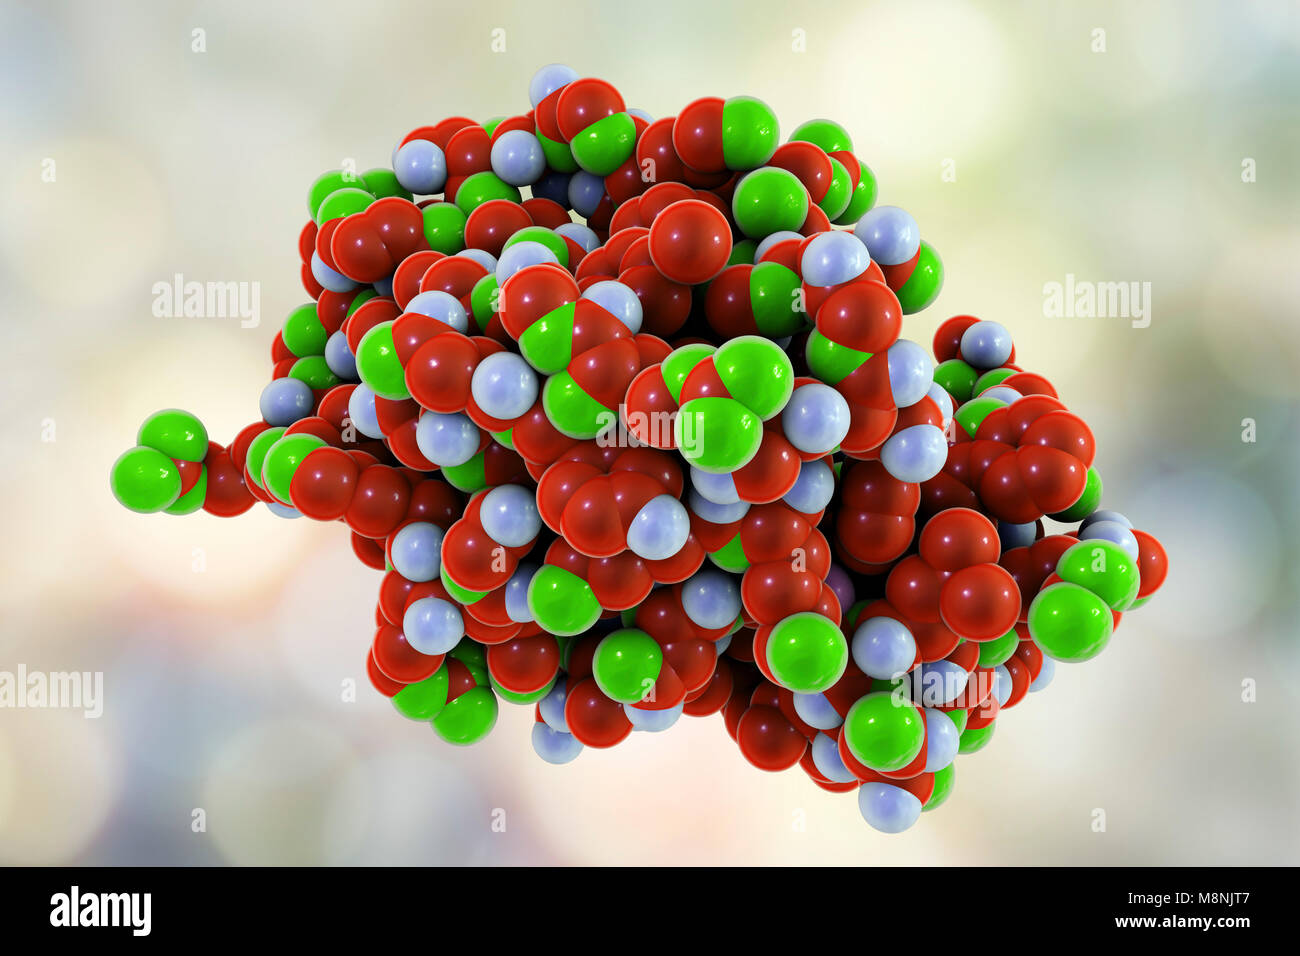 Molecola di lisozima, illustrazione del computer. I lisozimi sono enzimi trovati in una vasta gamma di fluidi biologici come lacrime, saliva e latte. Foto Stock